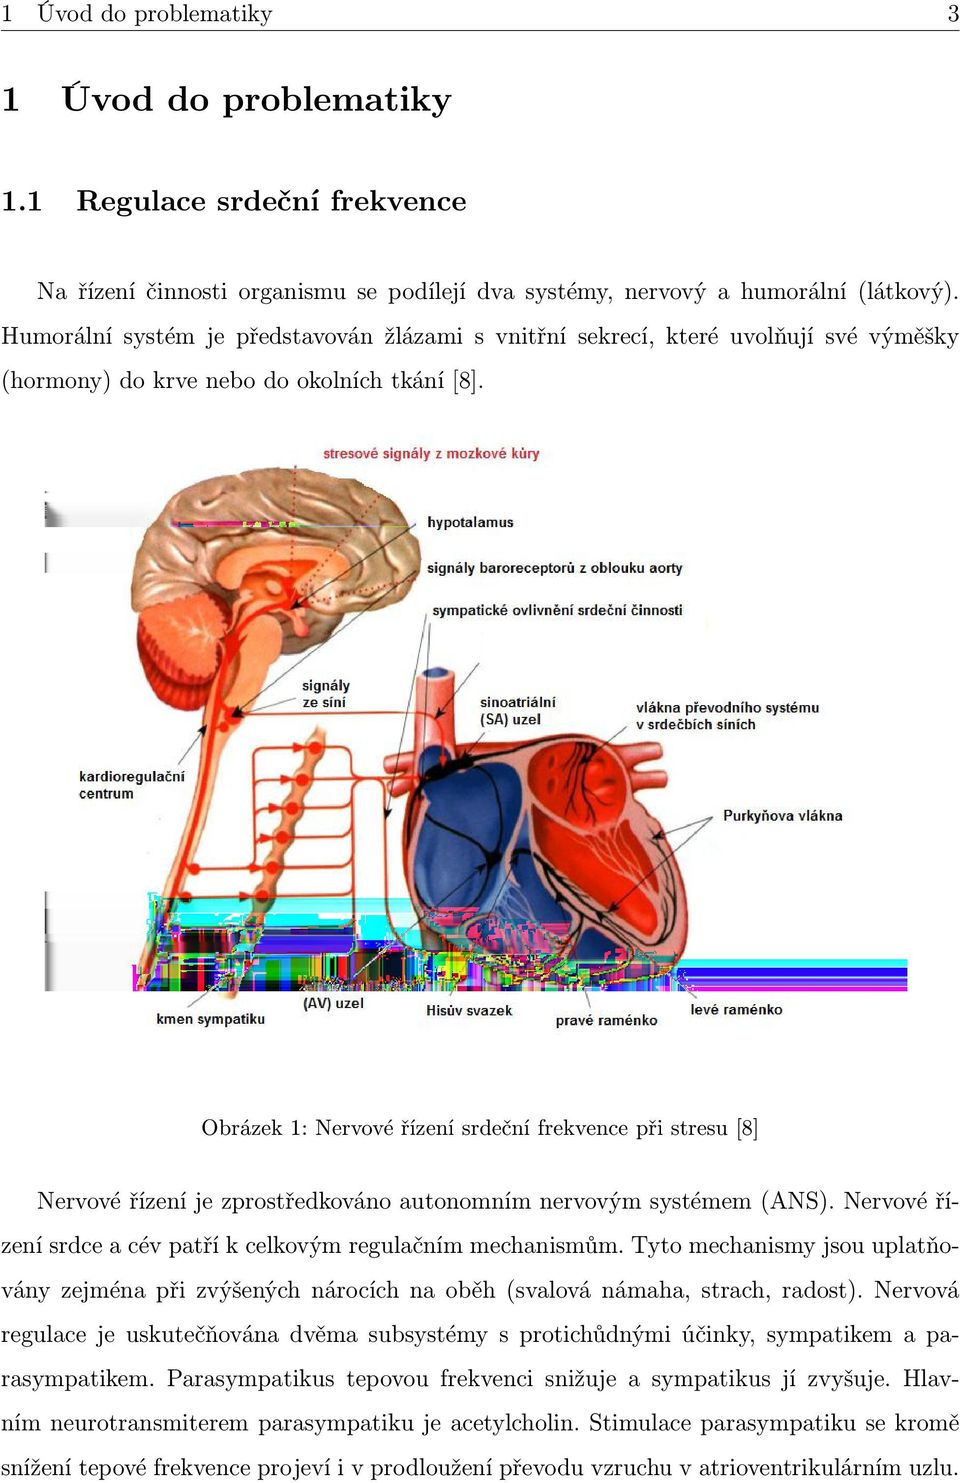 Obrázek 1: Nervové řízení srdeční frekvence při stresu [8] Nervové řízení je zprostředkováno autonomním nervovým systémem (ANS). Nervové řízení srdce a cév patří k celkovým regulačním mechanismům.